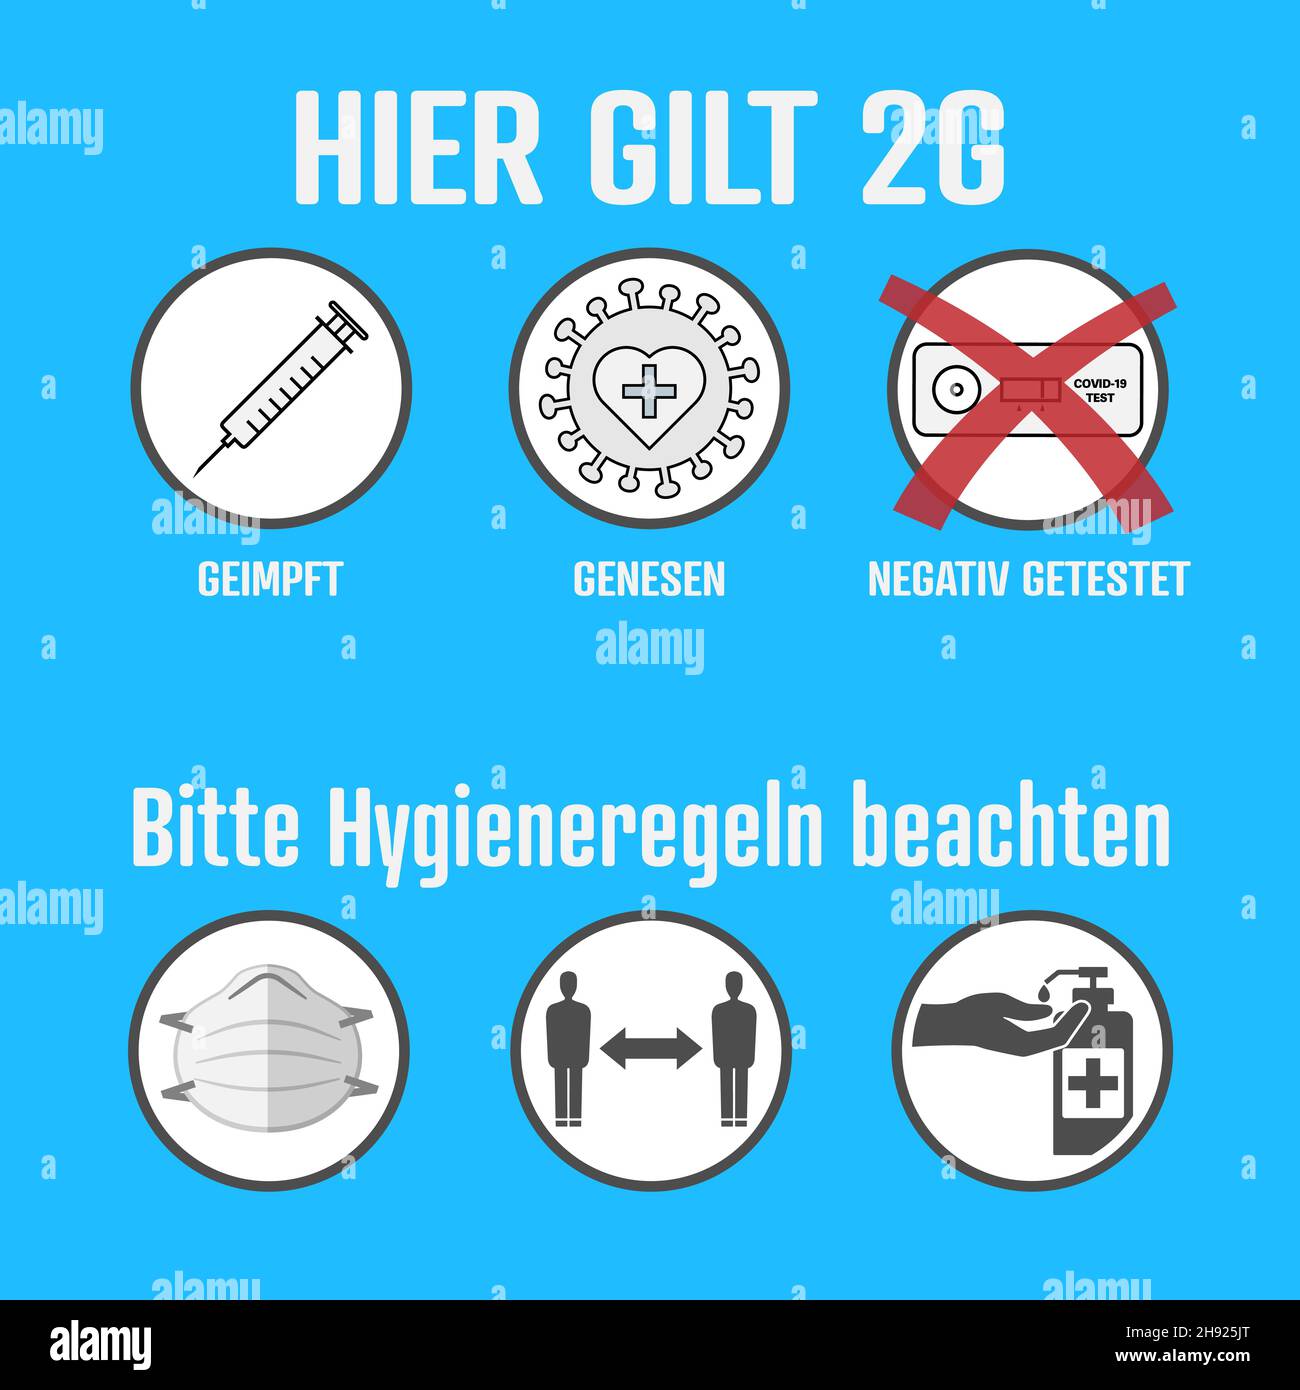 Covid-19 2G règles et mesures d'hygiène signent en allemand, accès seulement pour les personnes vaccinées (GEIMPFT) et récupérées (GENESEN), vecteur Illustration de Vecteur